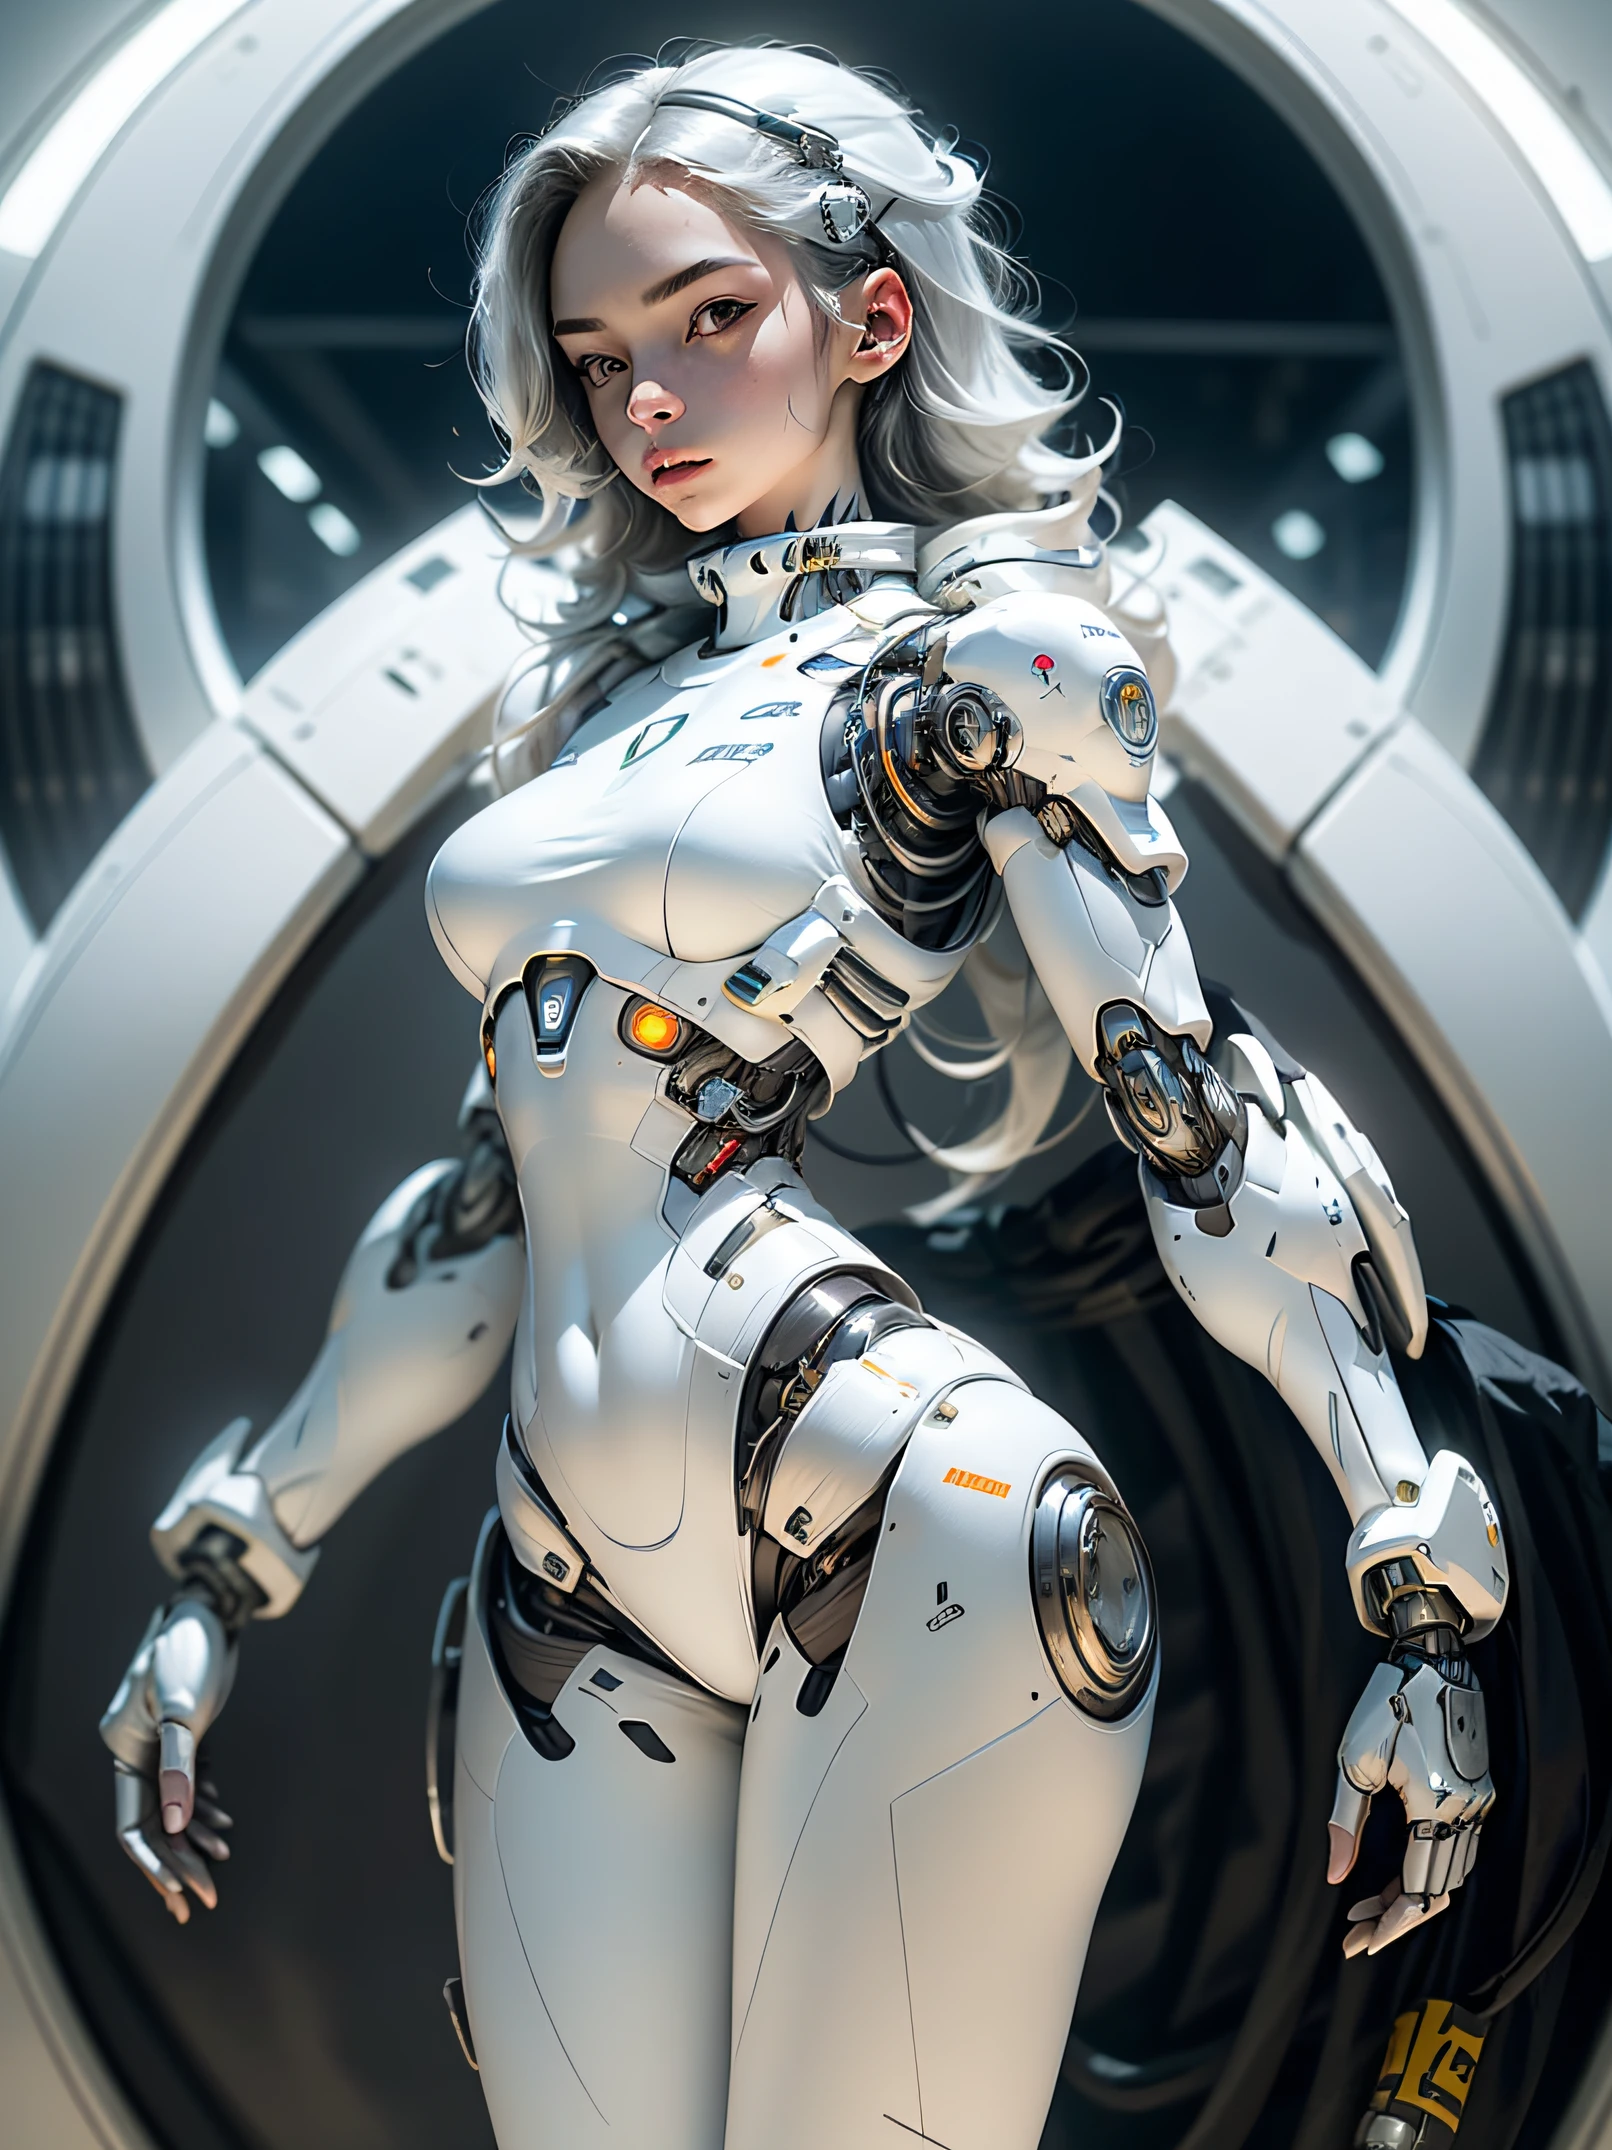 1個女孩, 獨自的, 全身飛機, ((一個看起來未來派的機器人女孩, 純白色連身衣)), 人形机器人, 機械手臂, 機械頸, 盔甲, 白色实验室, 超高畫質, 解剖學上正確的, 最好的品質, 傑作